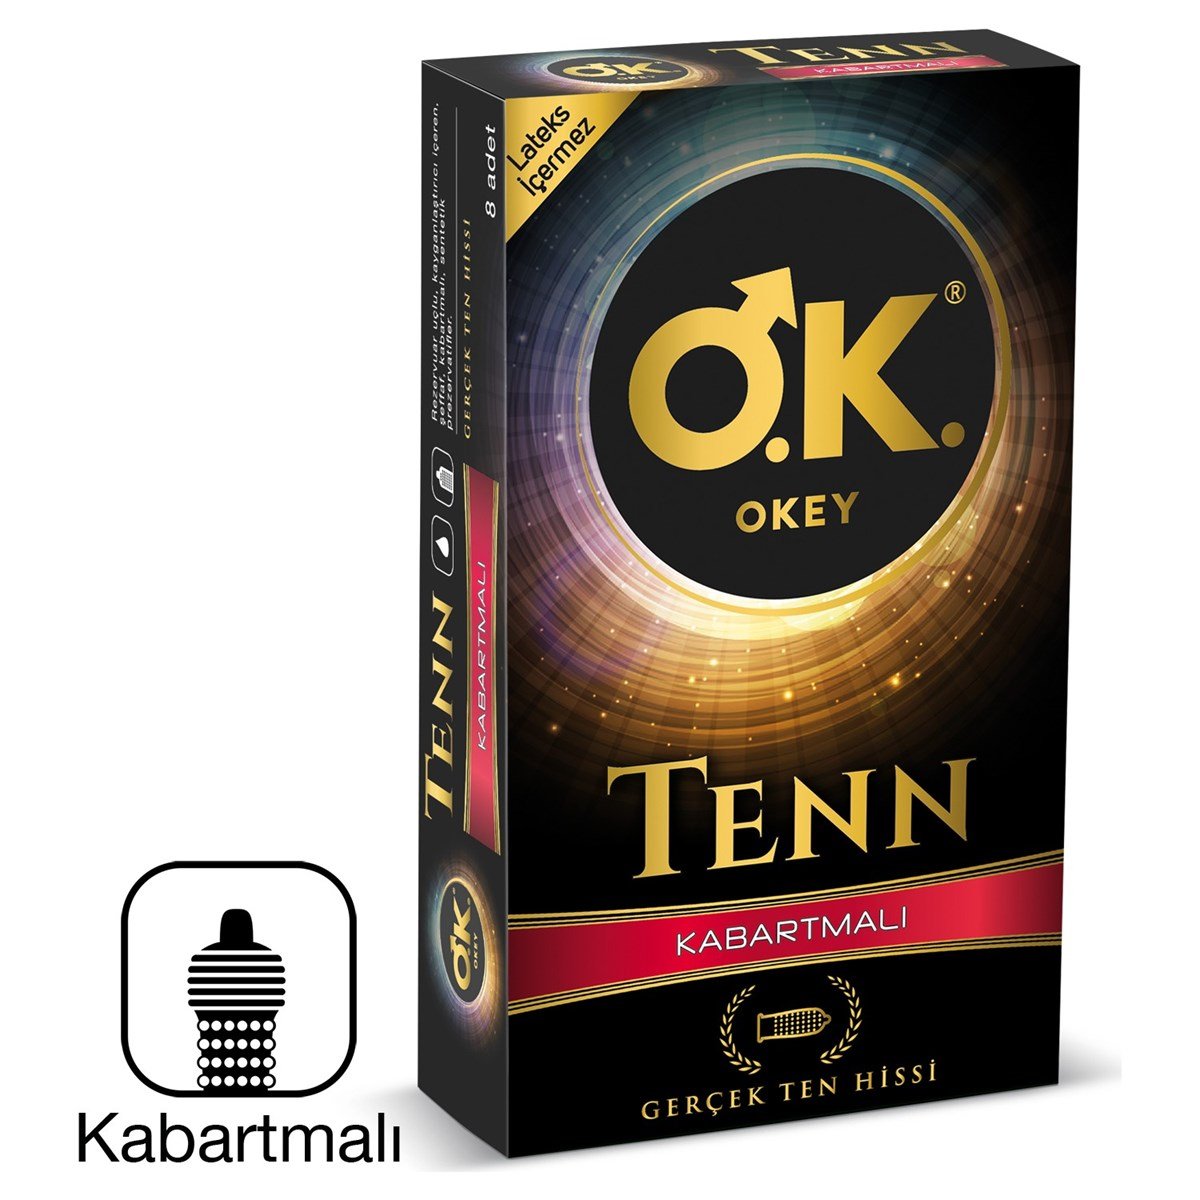 Okey Tenn Kabartmalı Prezervatif 8'li | sislon.com